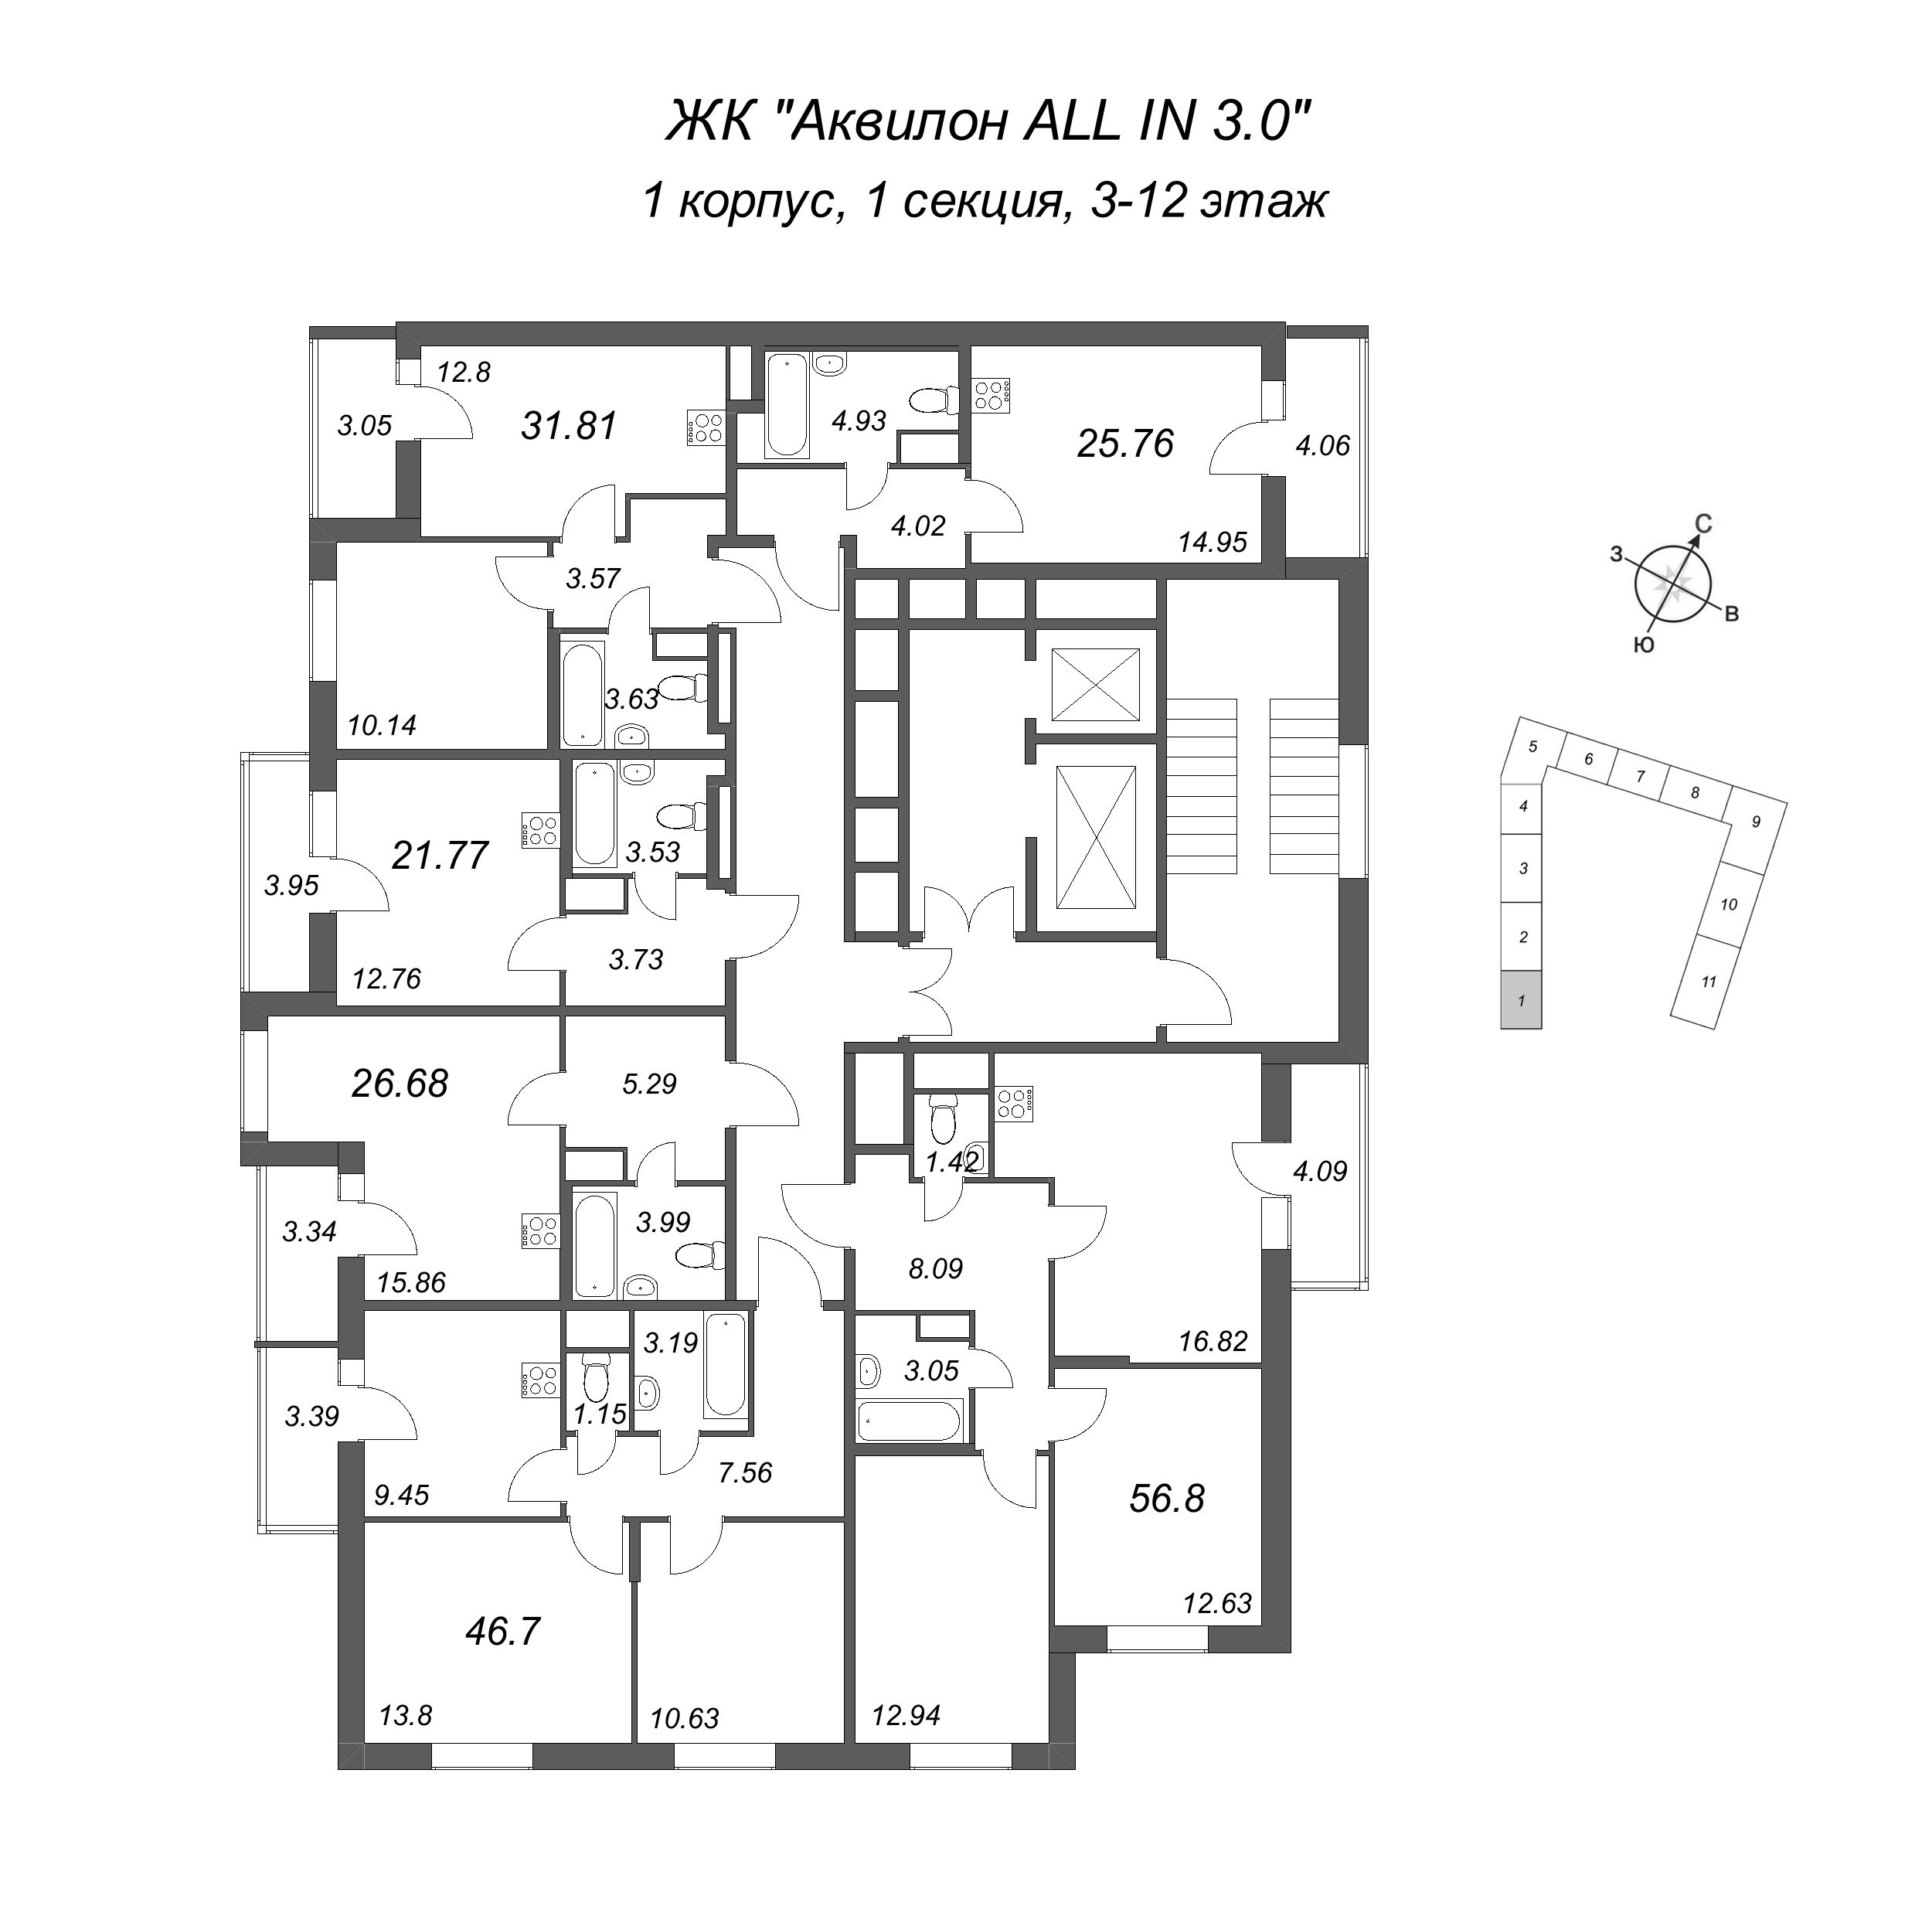 Квартира-студия, 21.77 м² в ЖК "Аквилон All in 3.0" - планировка этажа